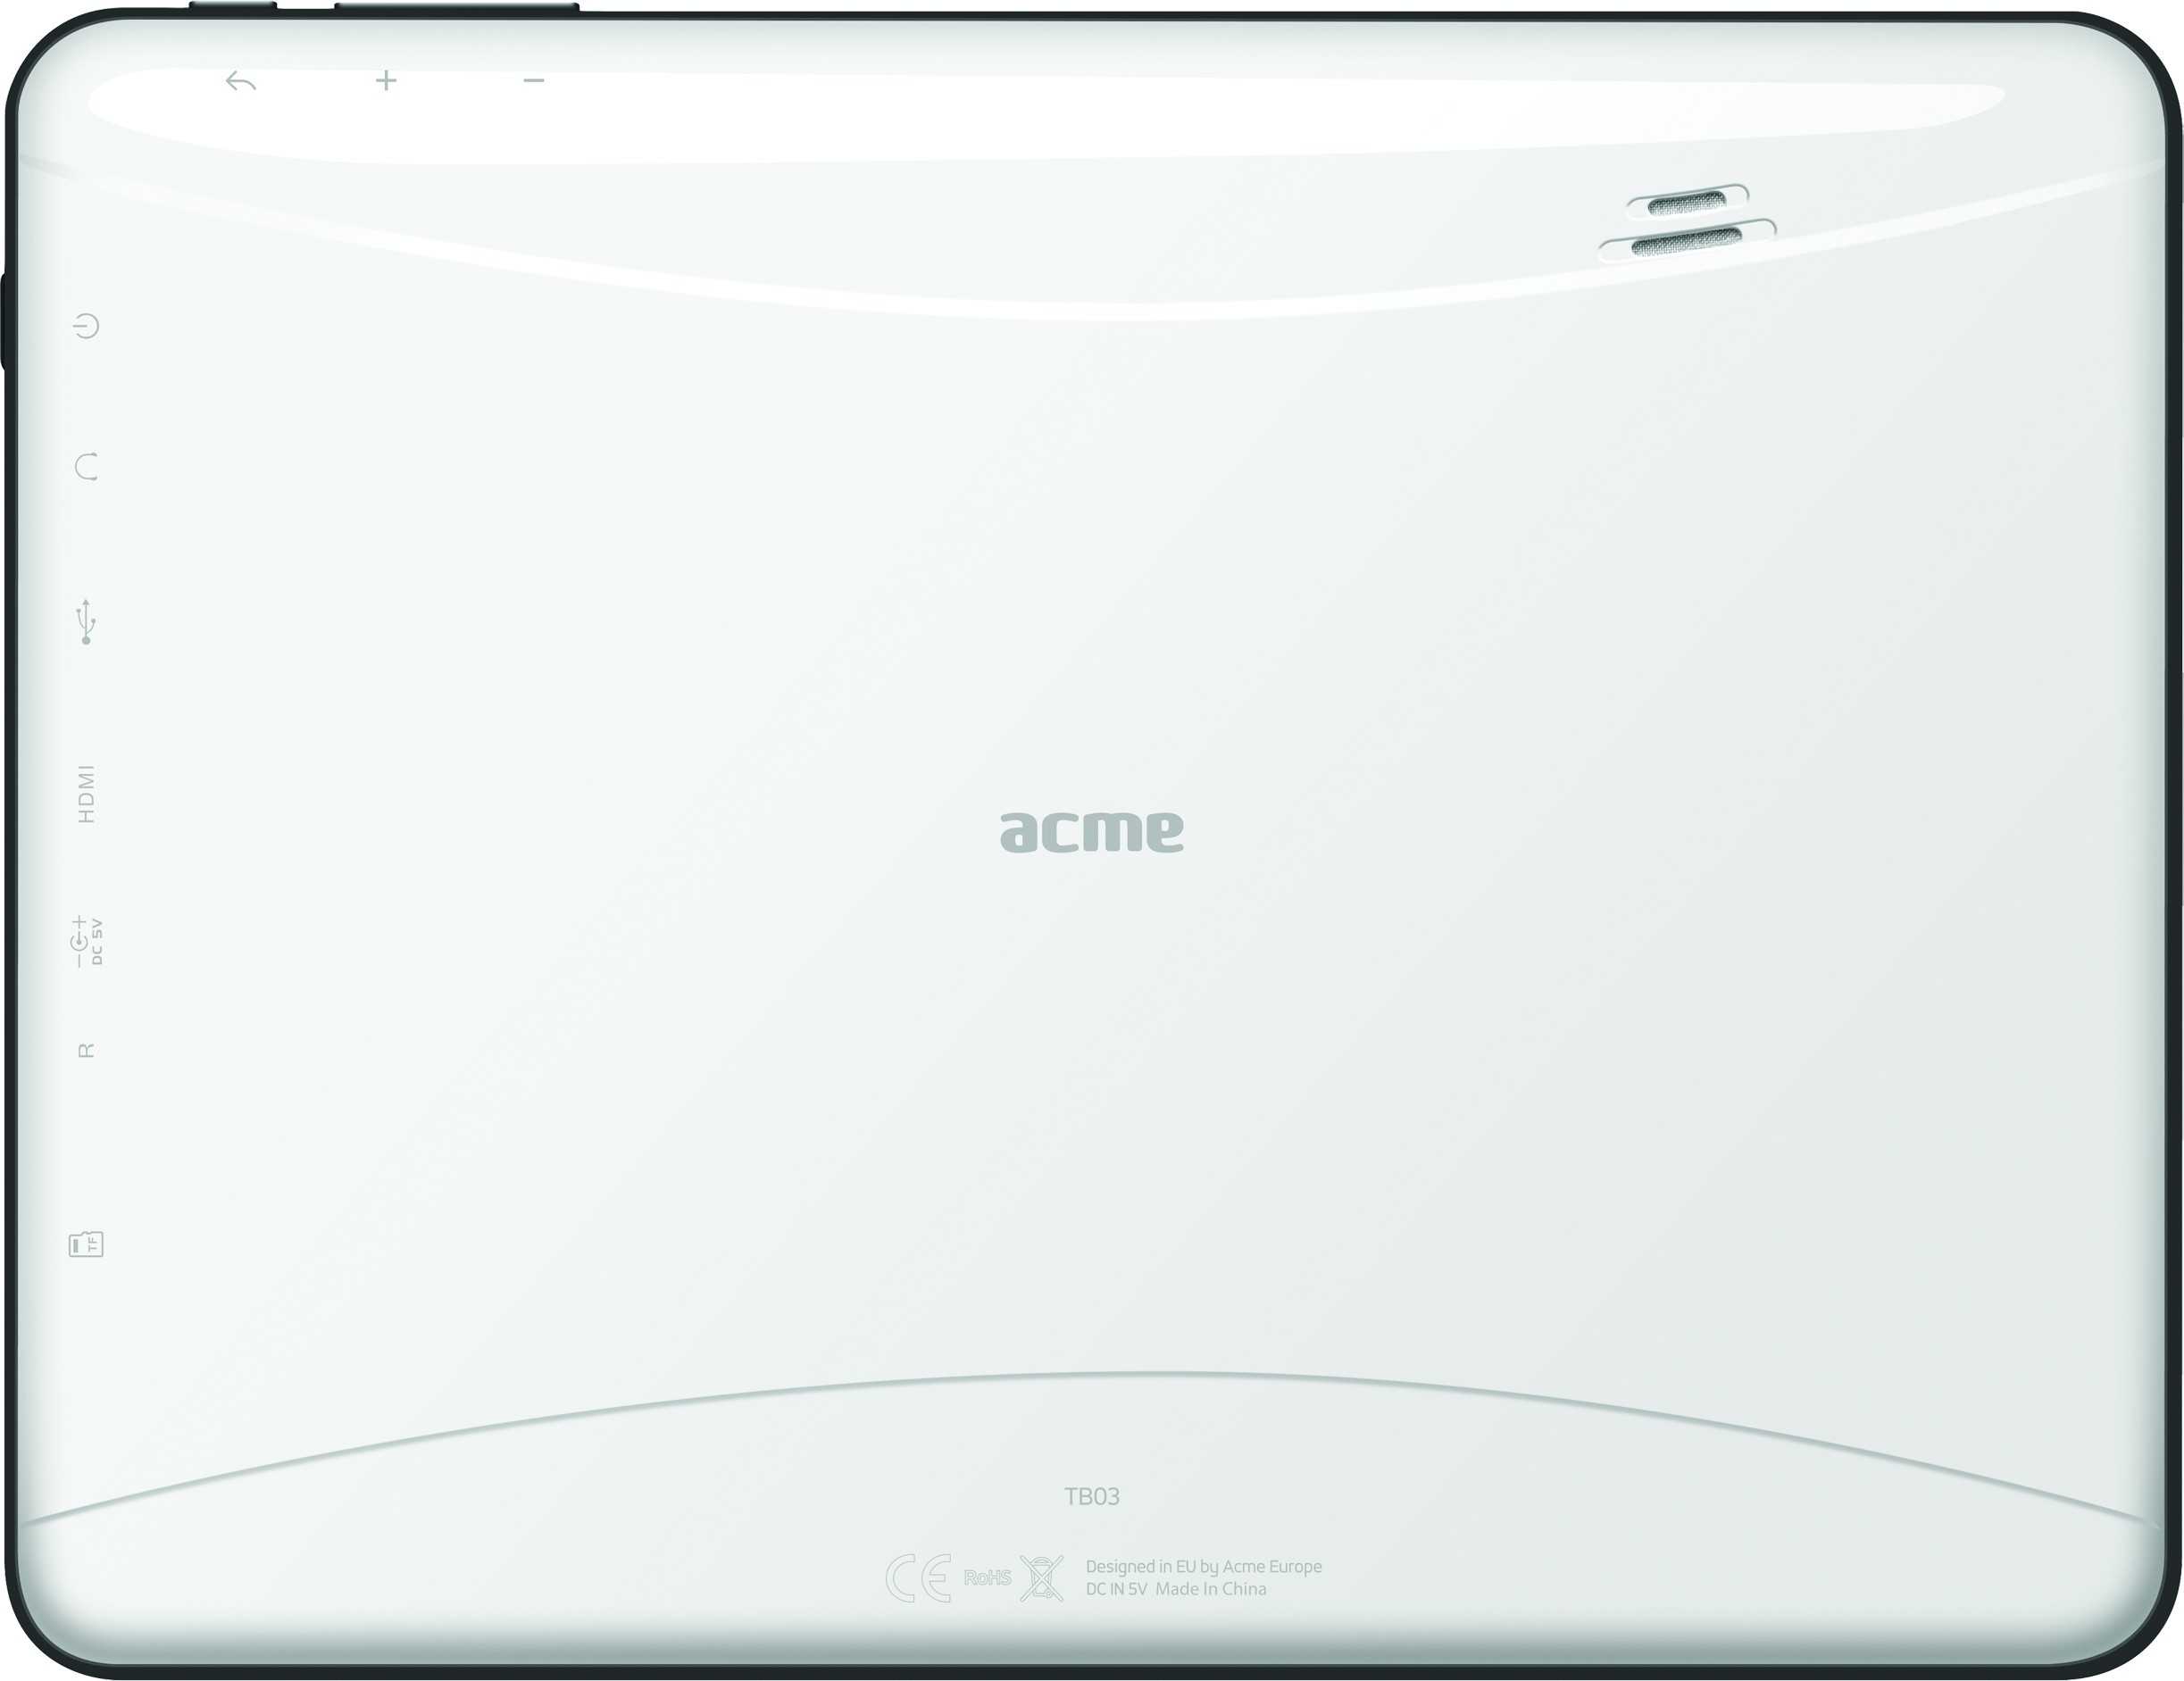 Acme tb807-3g - купить , скидки, цена, отзывы, обзор, характеристики - планшеты